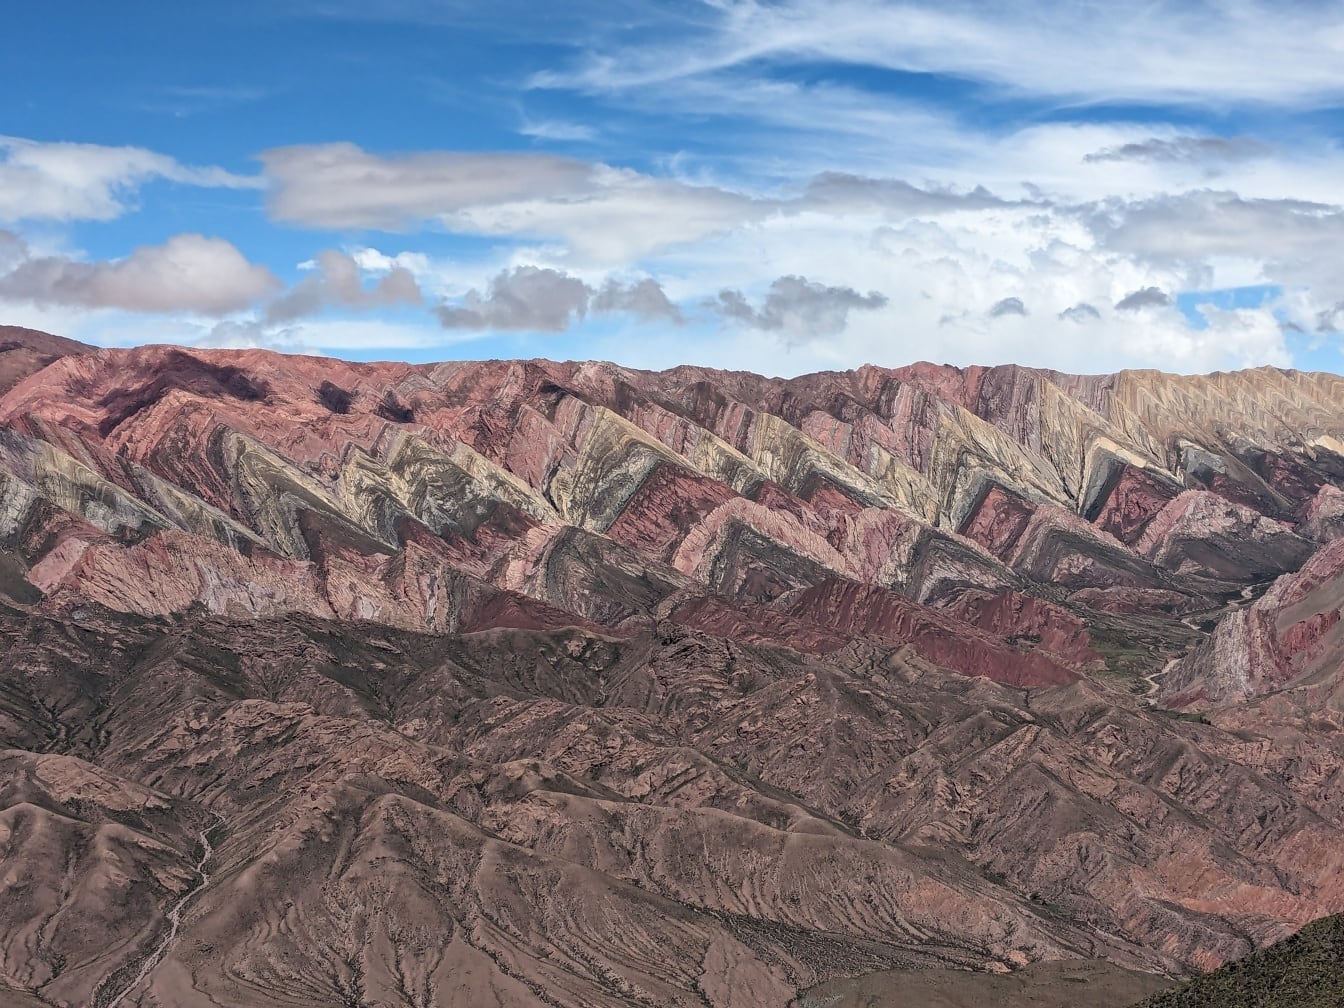 アルゼンチン北西部の山々にさまざまな色の岩があるセラニア・デ・ホルノカルと呼ばれる山頂